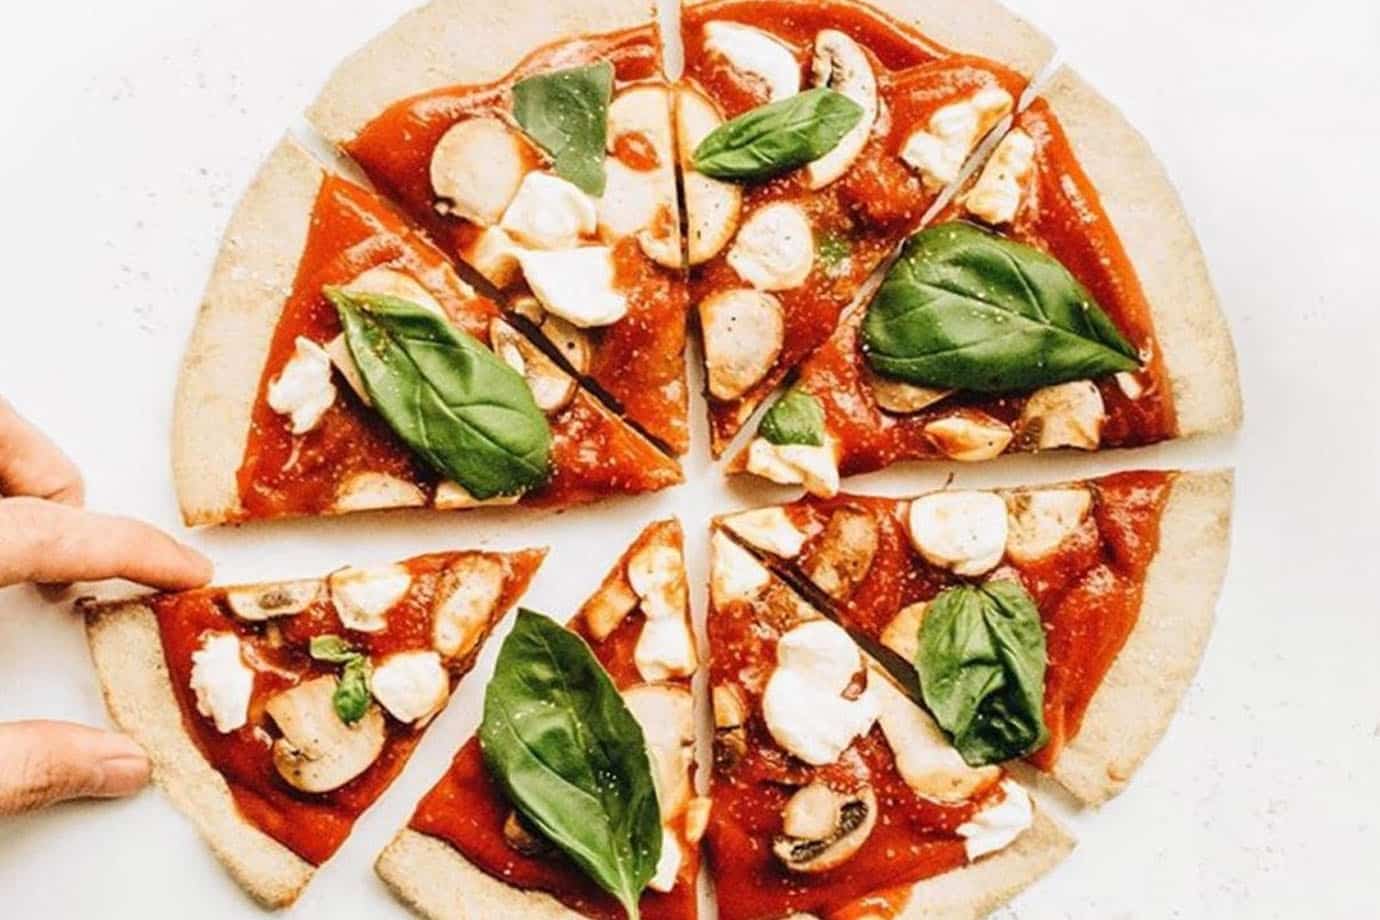 CONPROTEINAS|Espectacular receta de pizza proteica